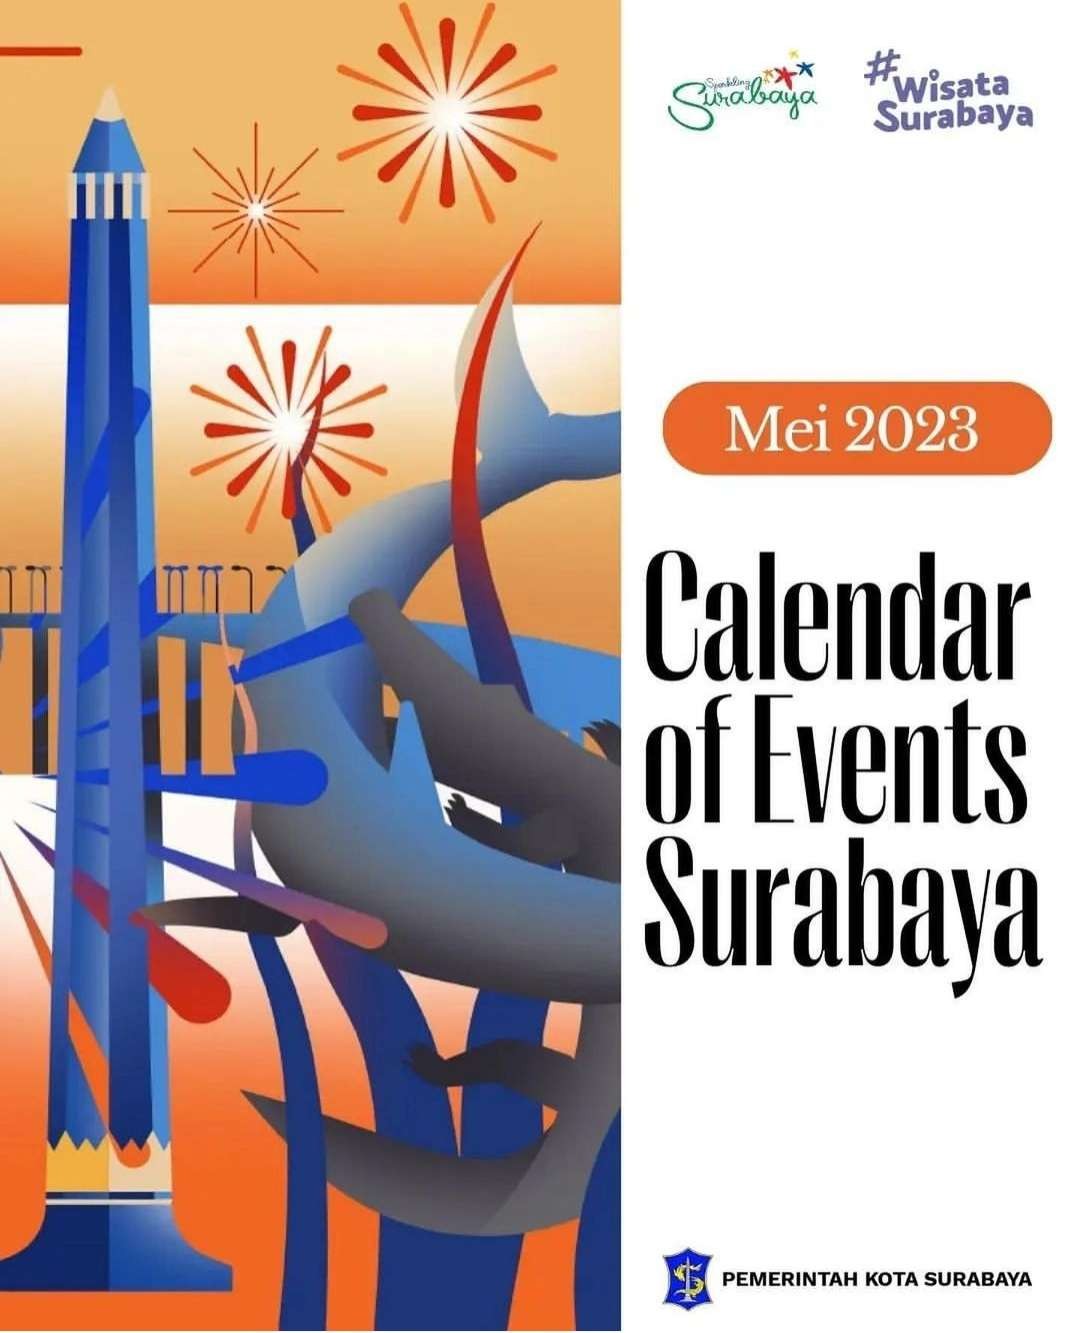 Rangkaian kegiatan Hari Jadi Kota Surabaya (HJKS) berlangsung 1-31 Mei 2023. (Grafis: Instagram @surabaya)